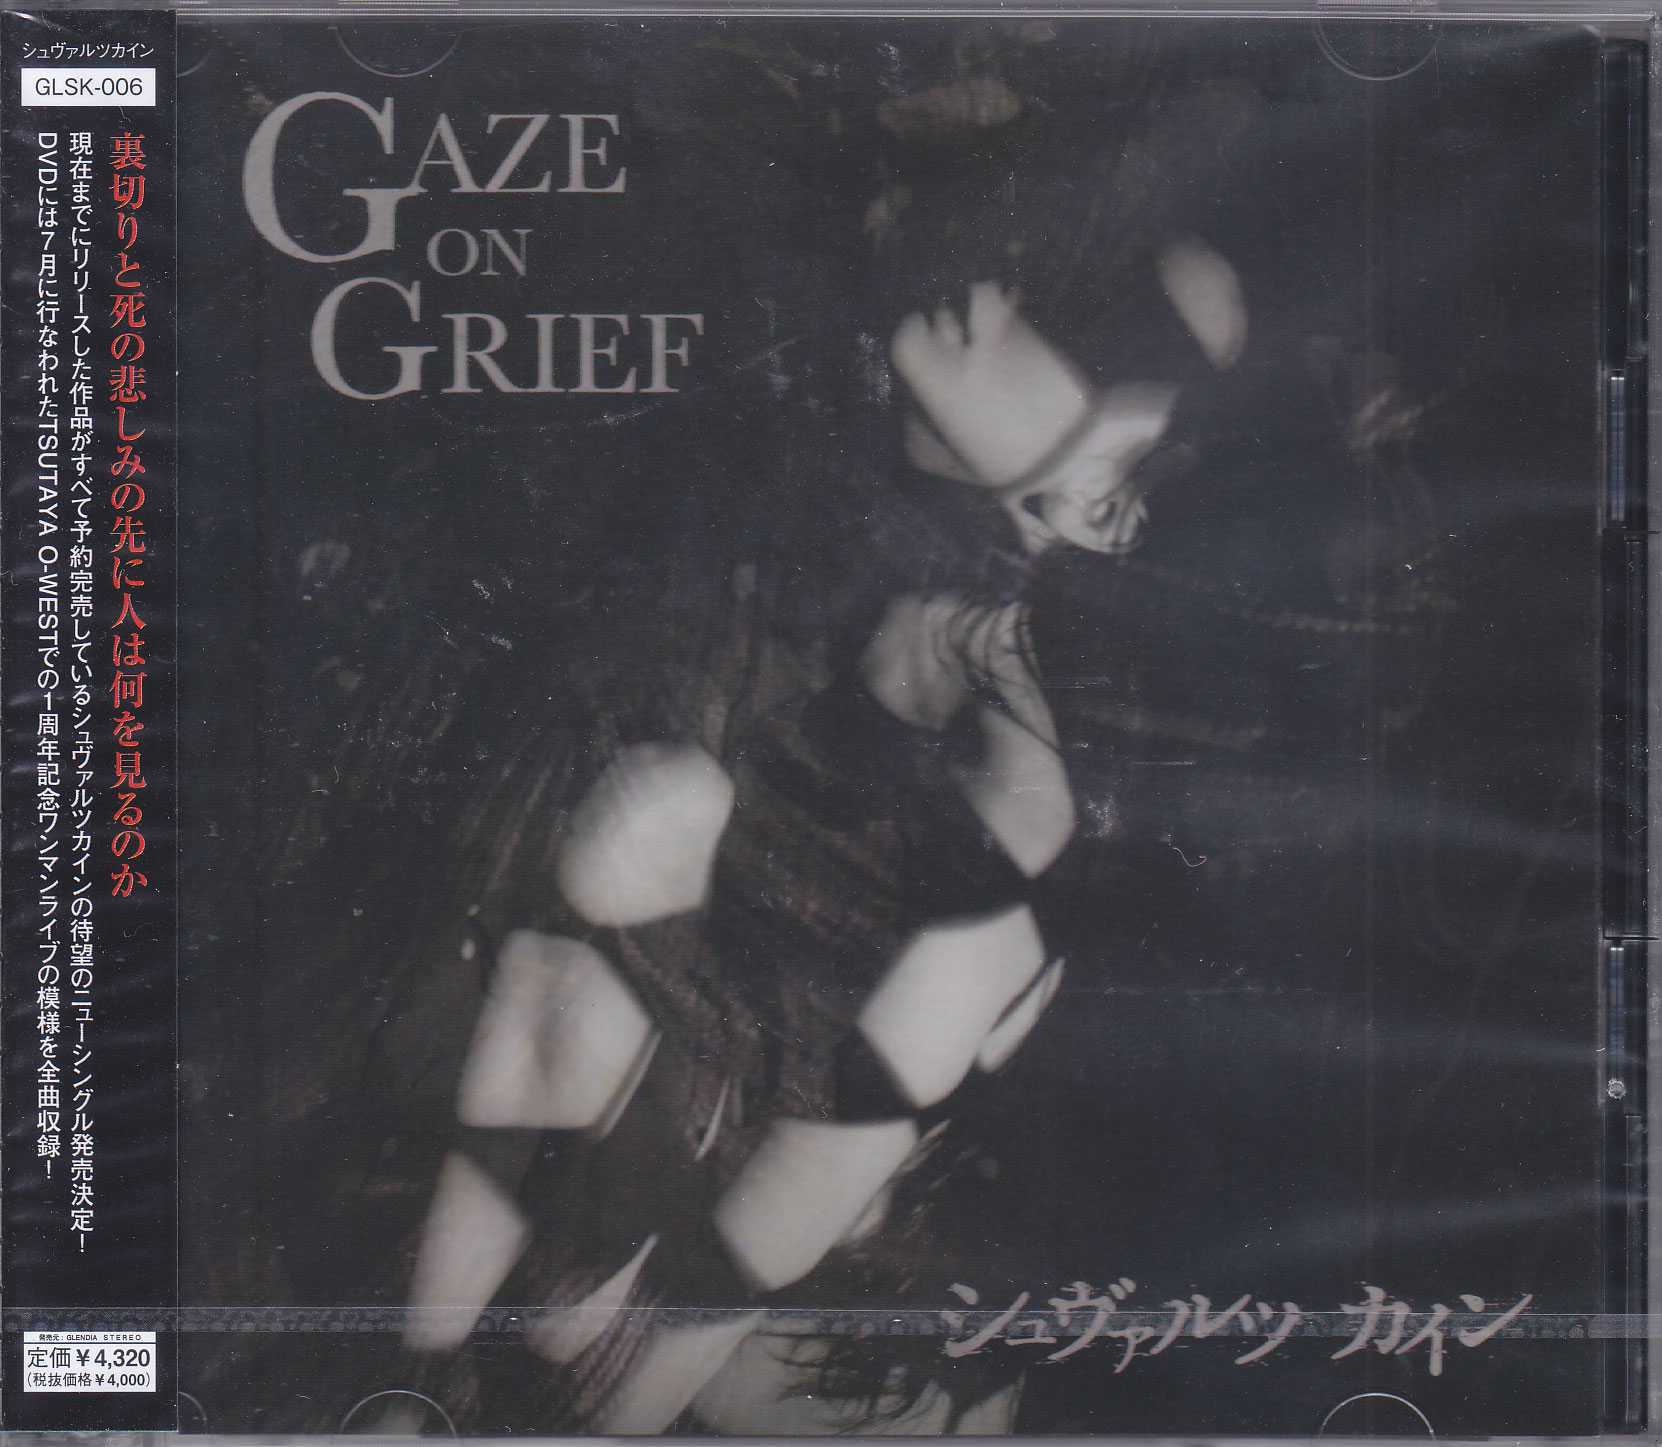 シュヴァルツカイン ( シュヴァルツカイン )  の CD GAZE ON GRIEF